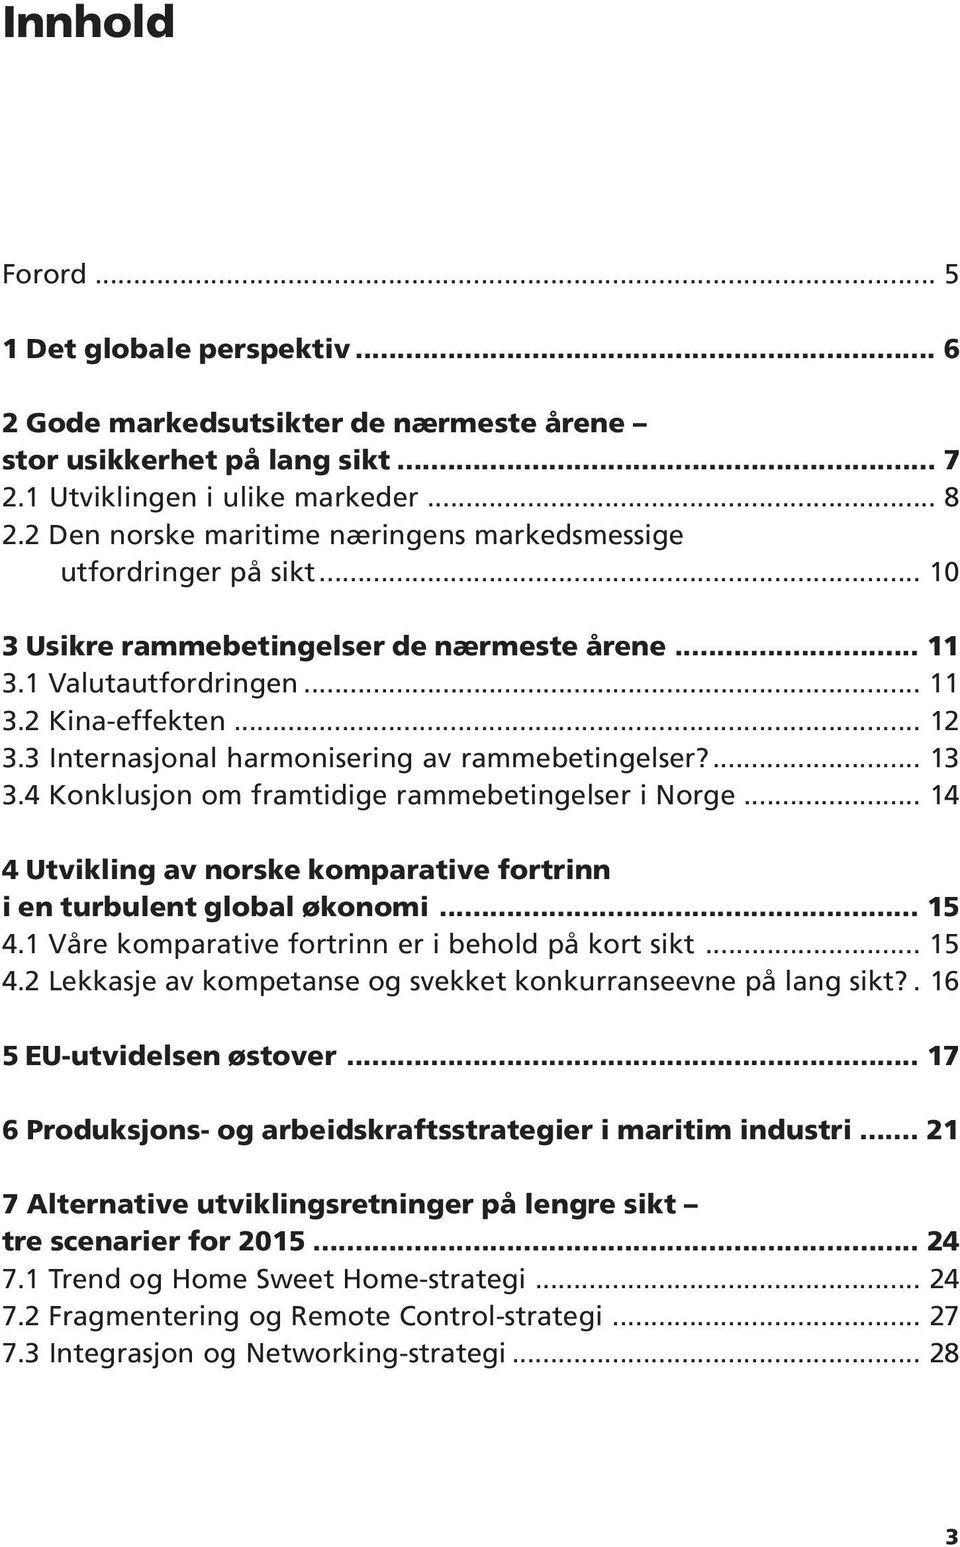 3 Internasjonal harmonisering av rammebetingelser?... 13 3.4 Konklusjon om framtidige rammebetingelser i Norge... 14 4 Utvikling av norske komparative fortrinn i en turbulent global økonomi... 15 4.